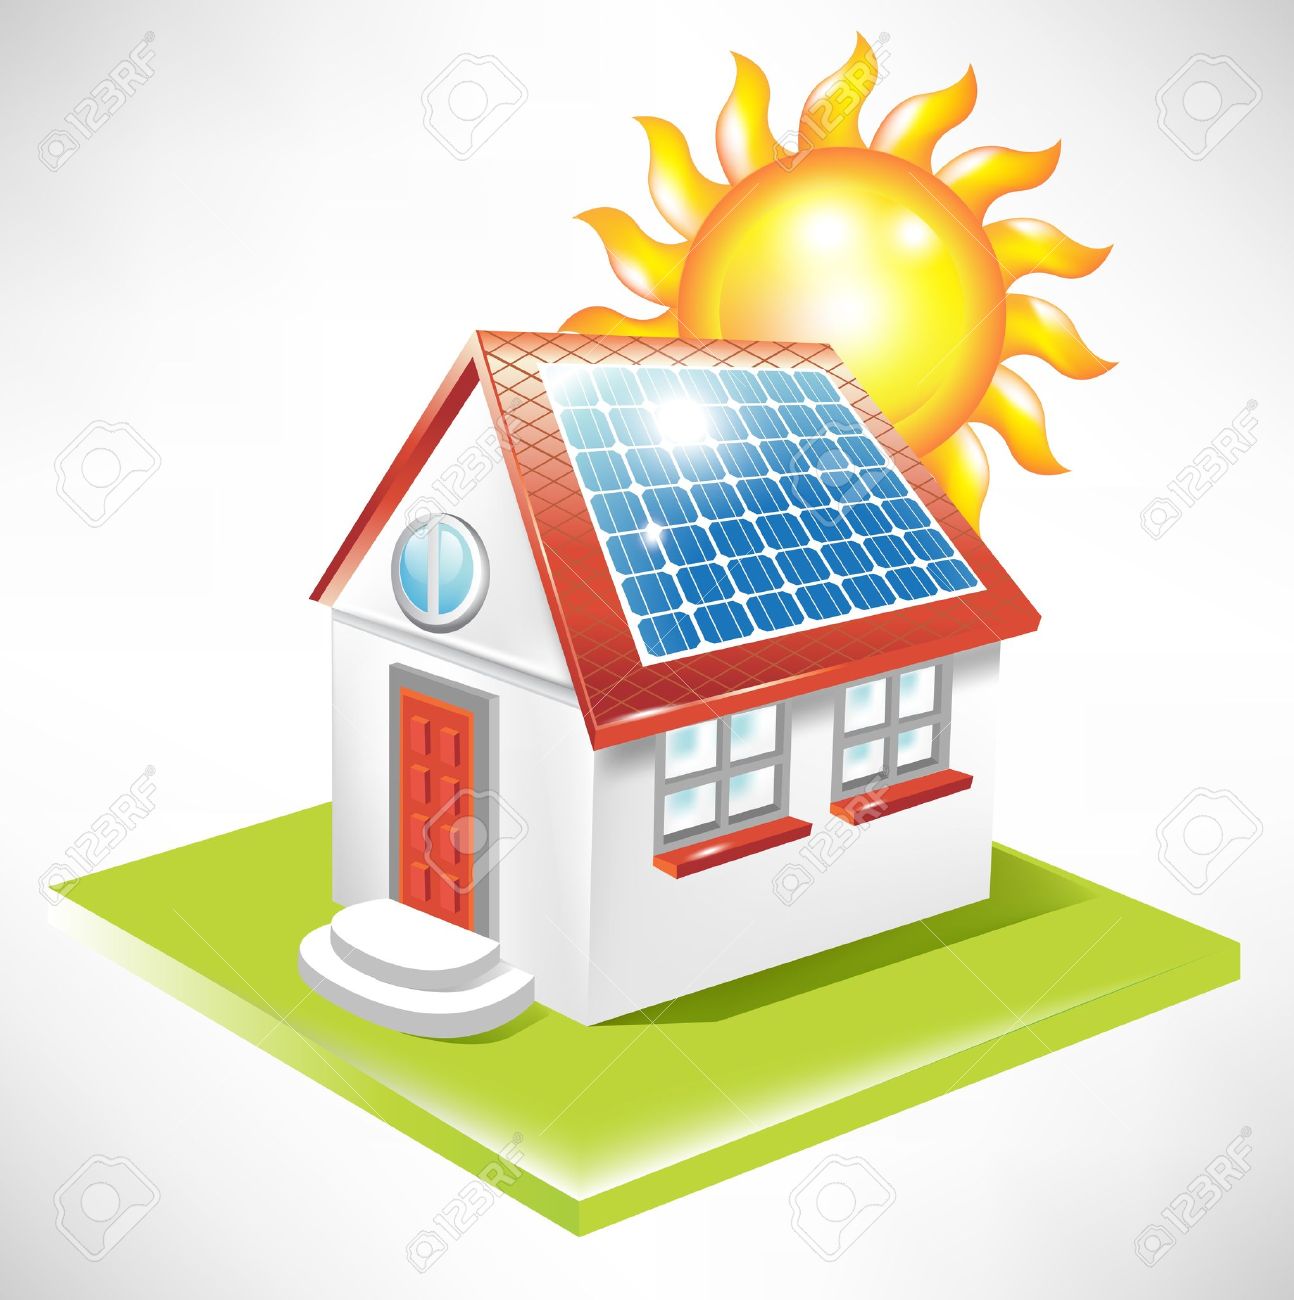 solar-house-clipart-1